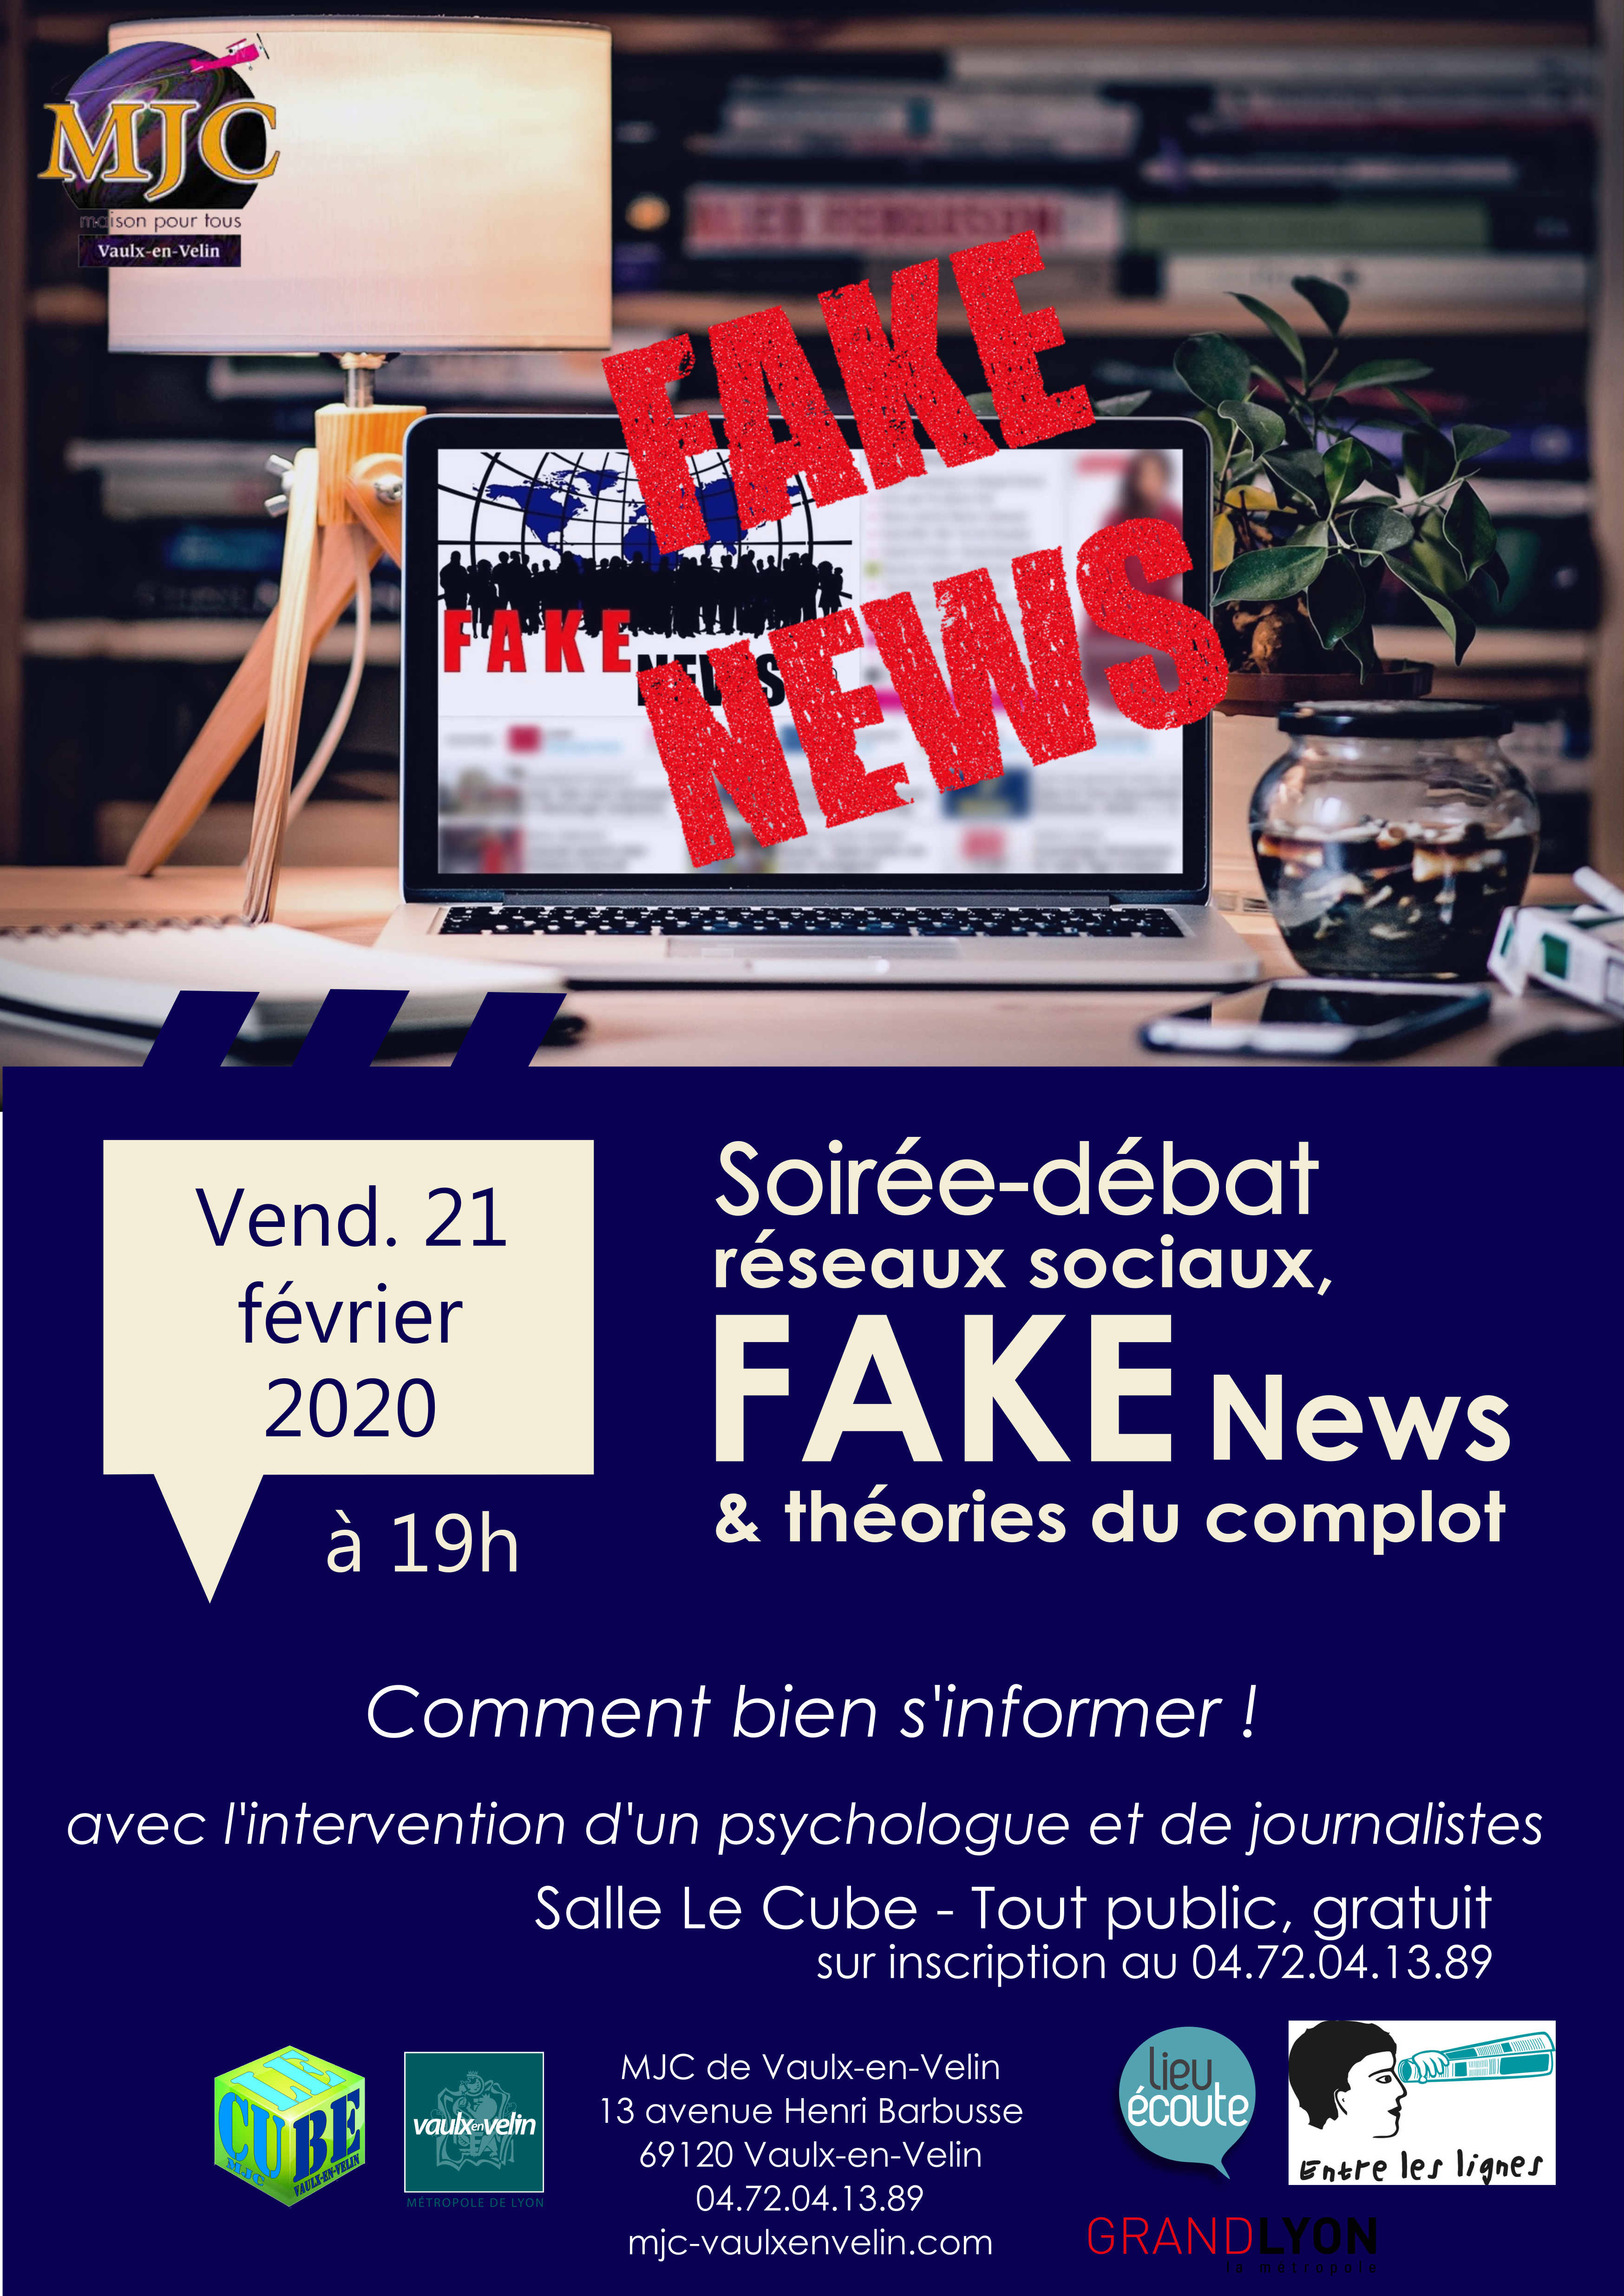 La MJC Vaulx-en-Velin organise une soirée « réseaux sociaux, fake news et théories du complot »